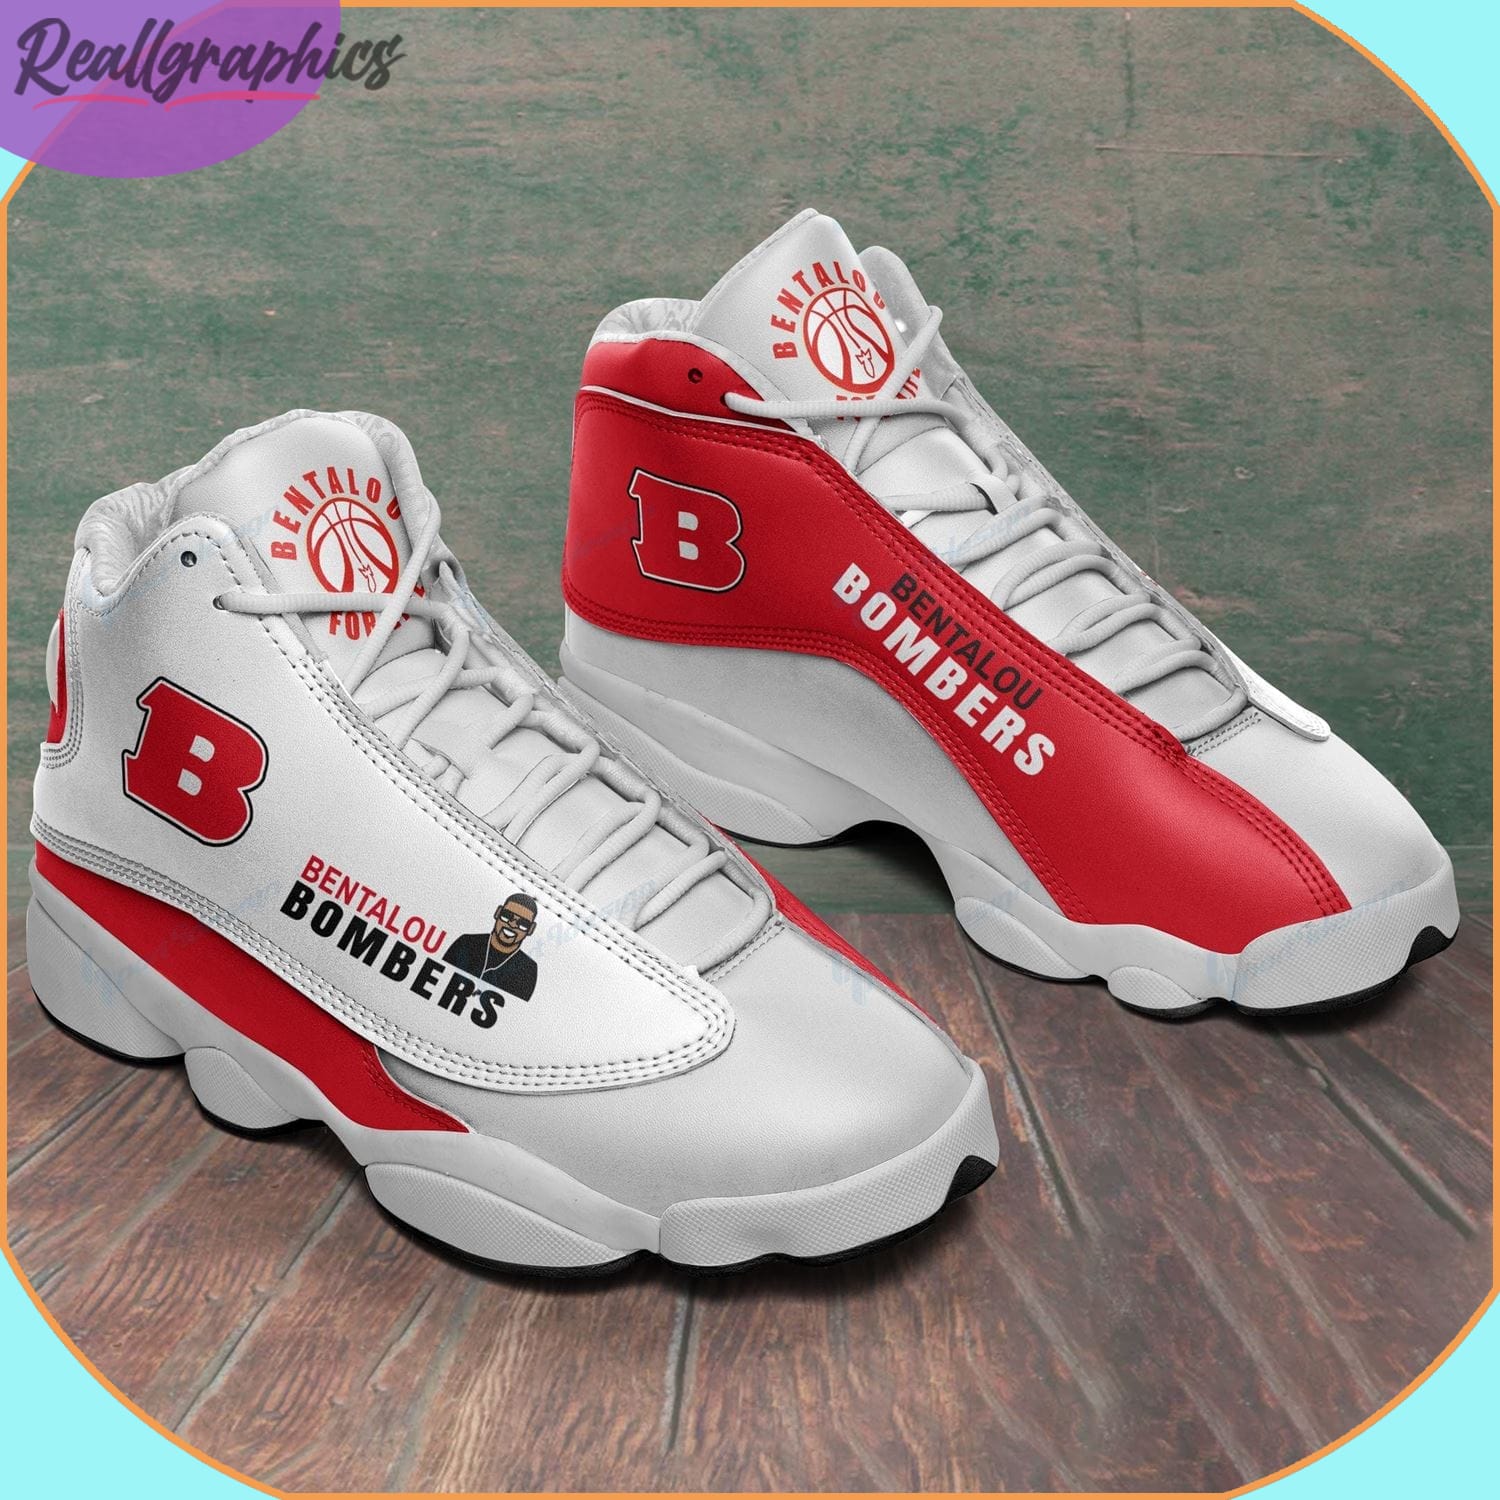 Bentalou Bomber's Air Jordan 13 Sneakers